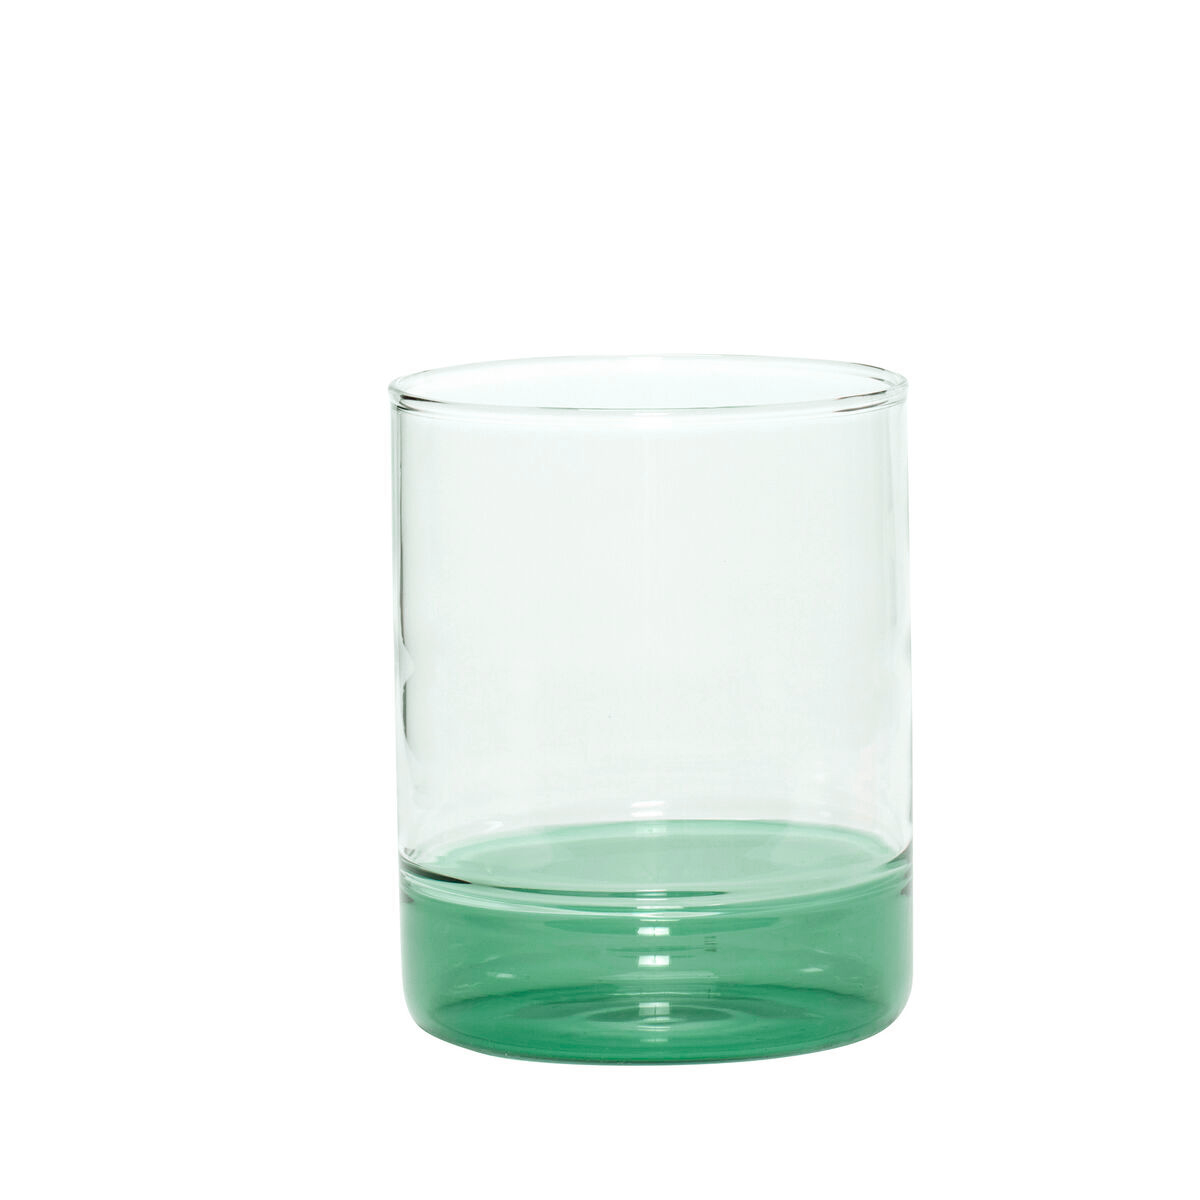 Hubsch Handmade Clear Glass Tumbler with Green Bottom